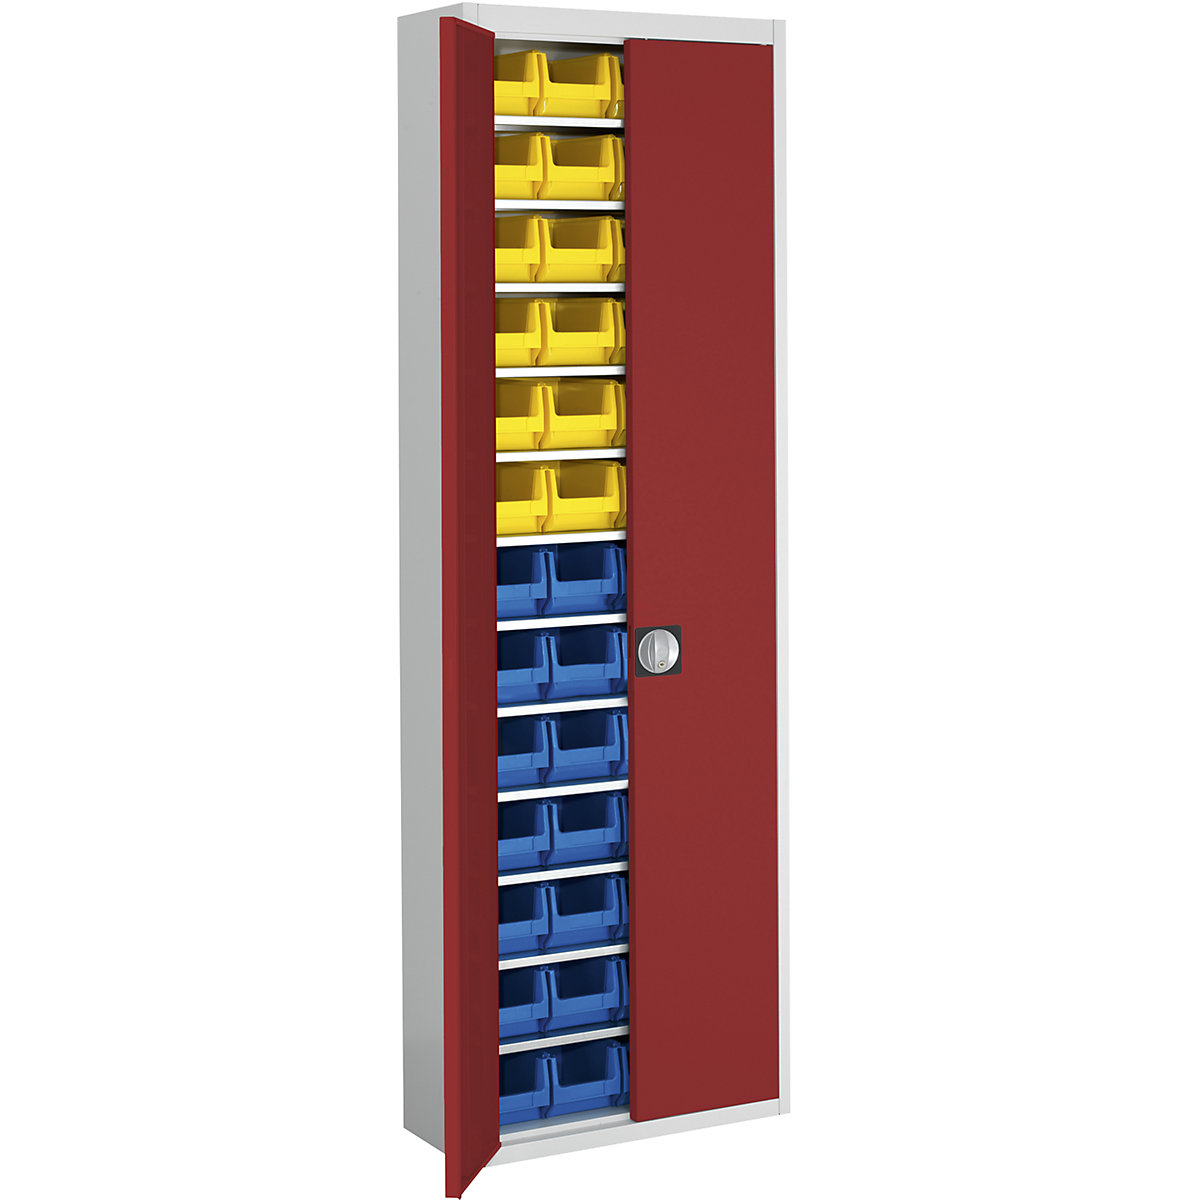 Skladová skříň s přepravkami s viditelným obsahem – mauser, v x š x h 2150 x 680 x 280 mm, dvoubarevné, korpus šedý, dveře červené, 52 přepravek-10